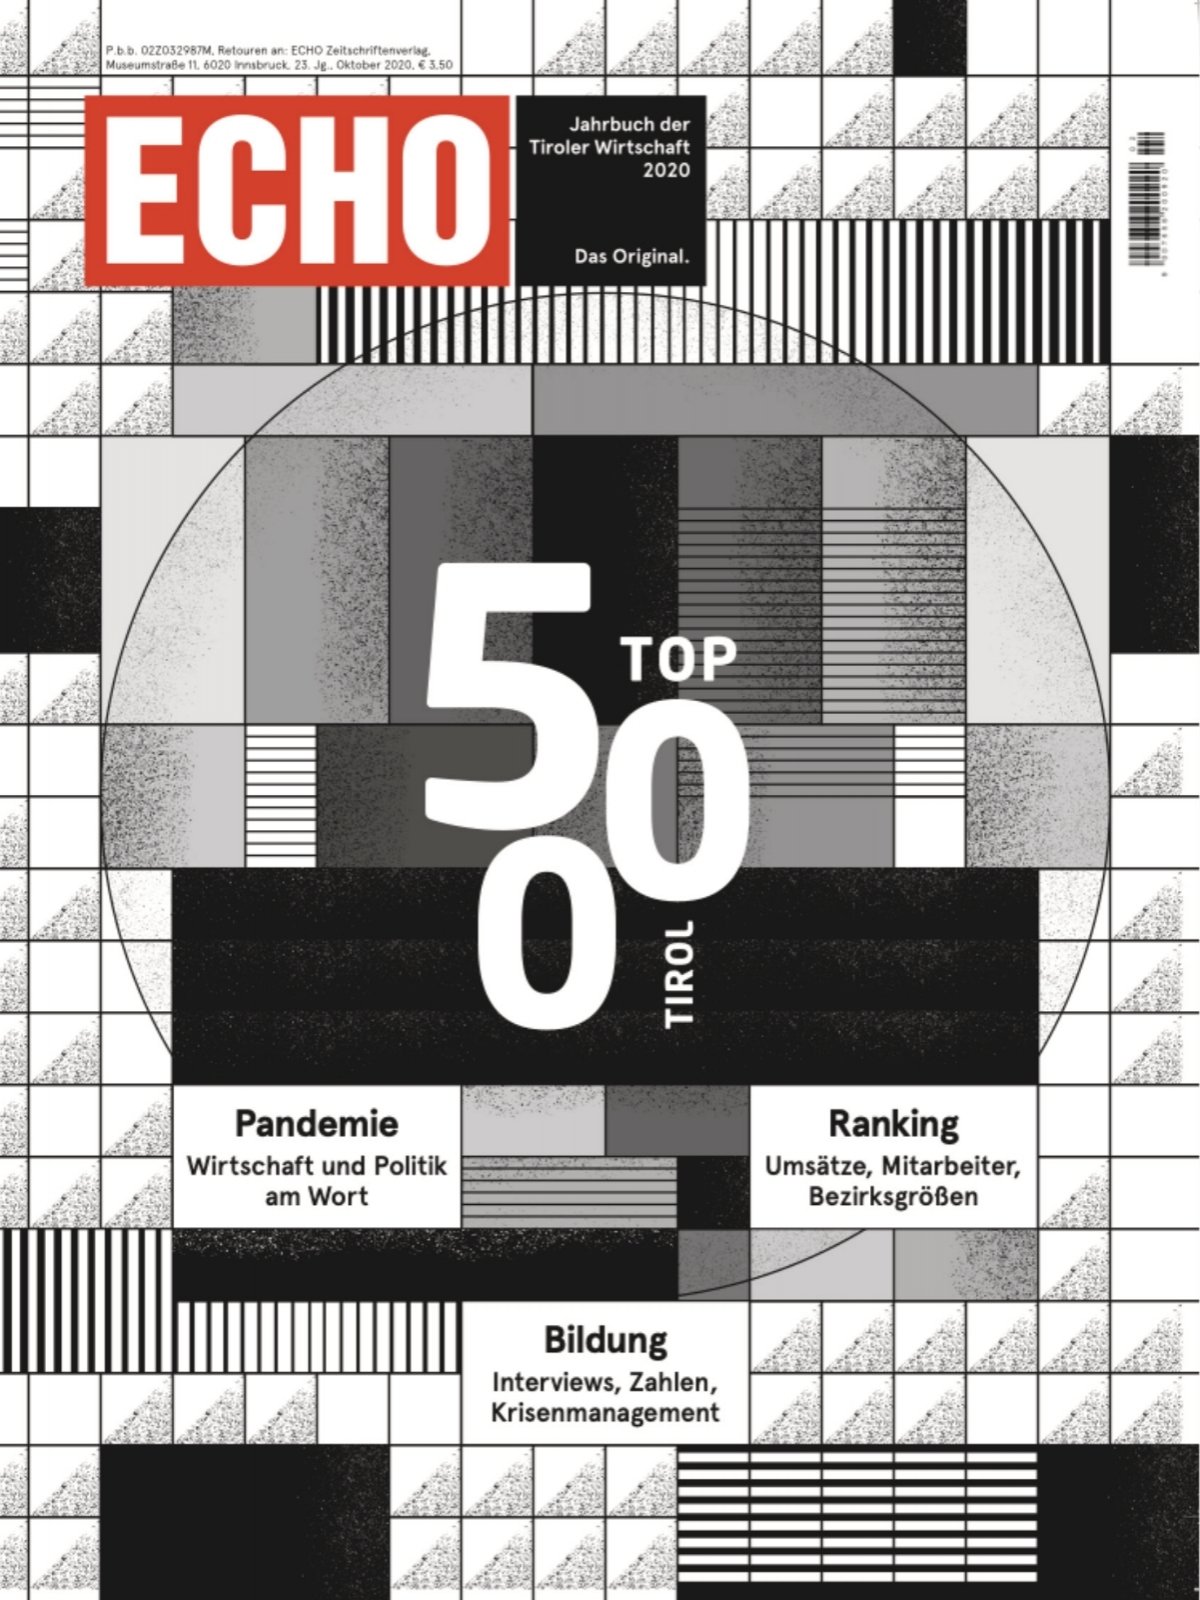 ECHO Top500 2020